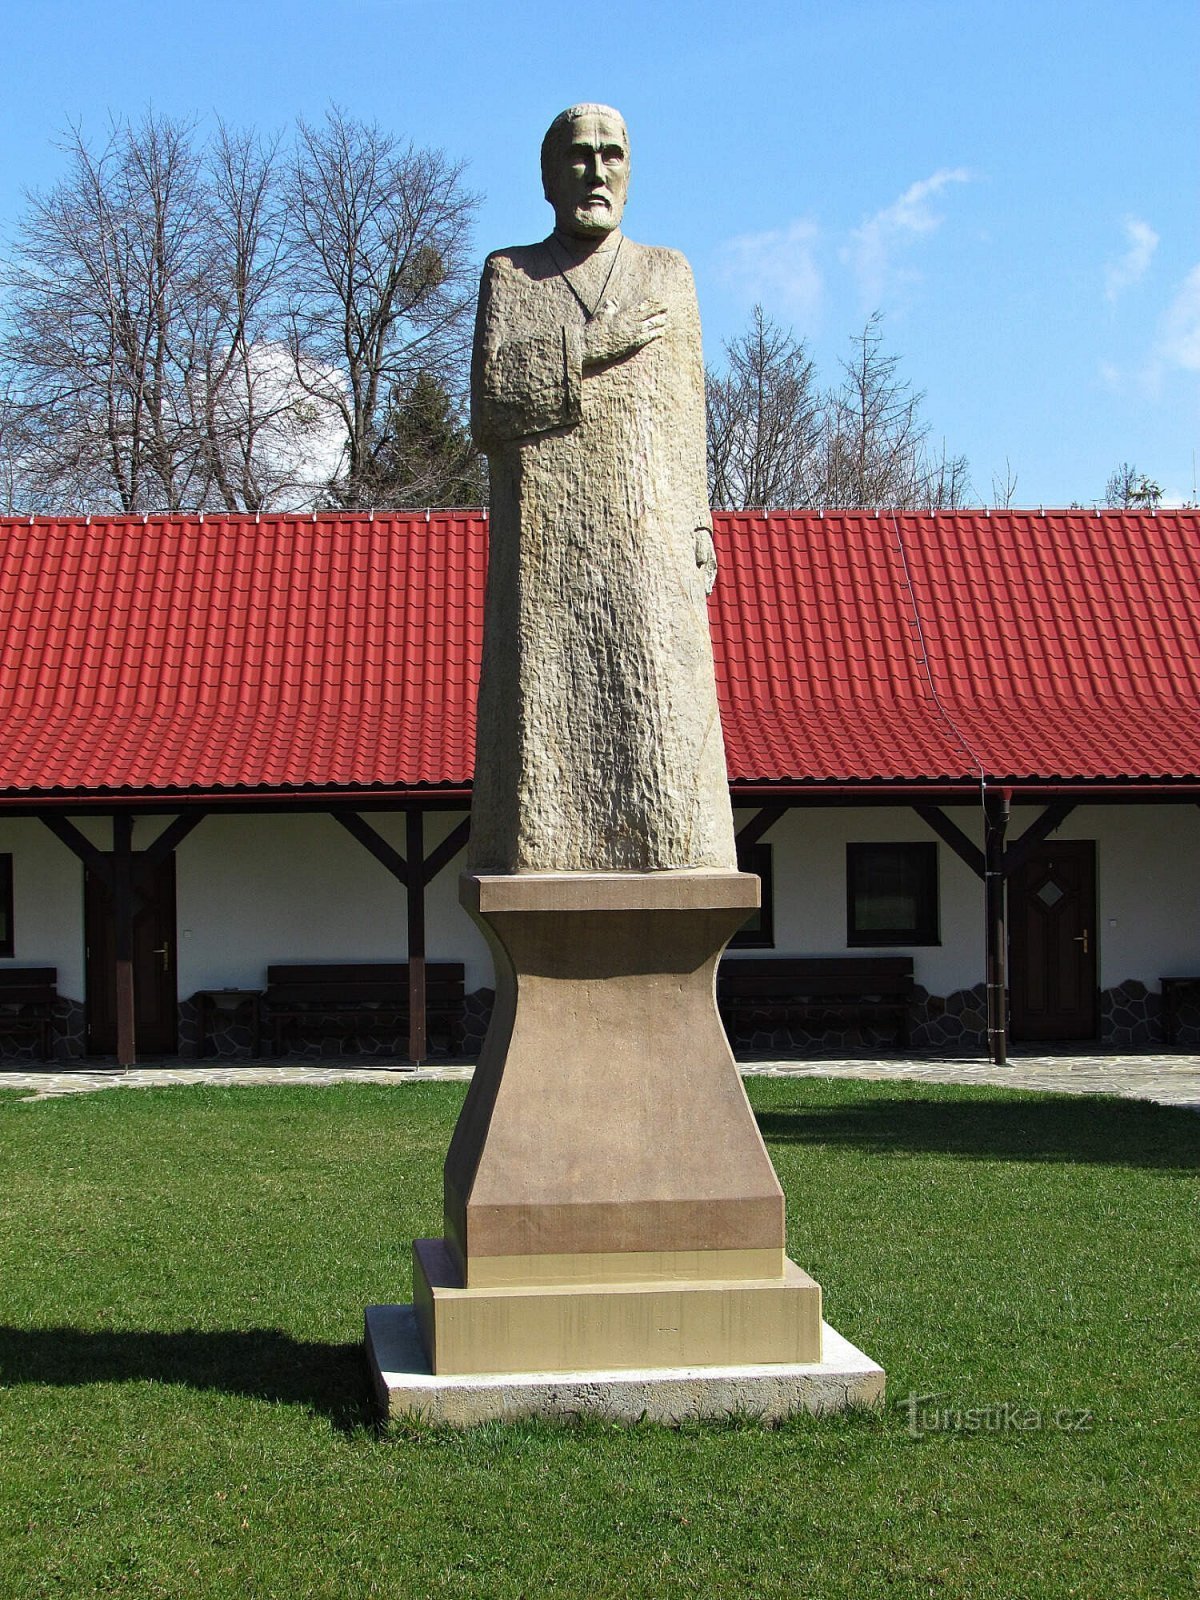 Prženské Paseky - en statue af Hus og en sokkel uden statue